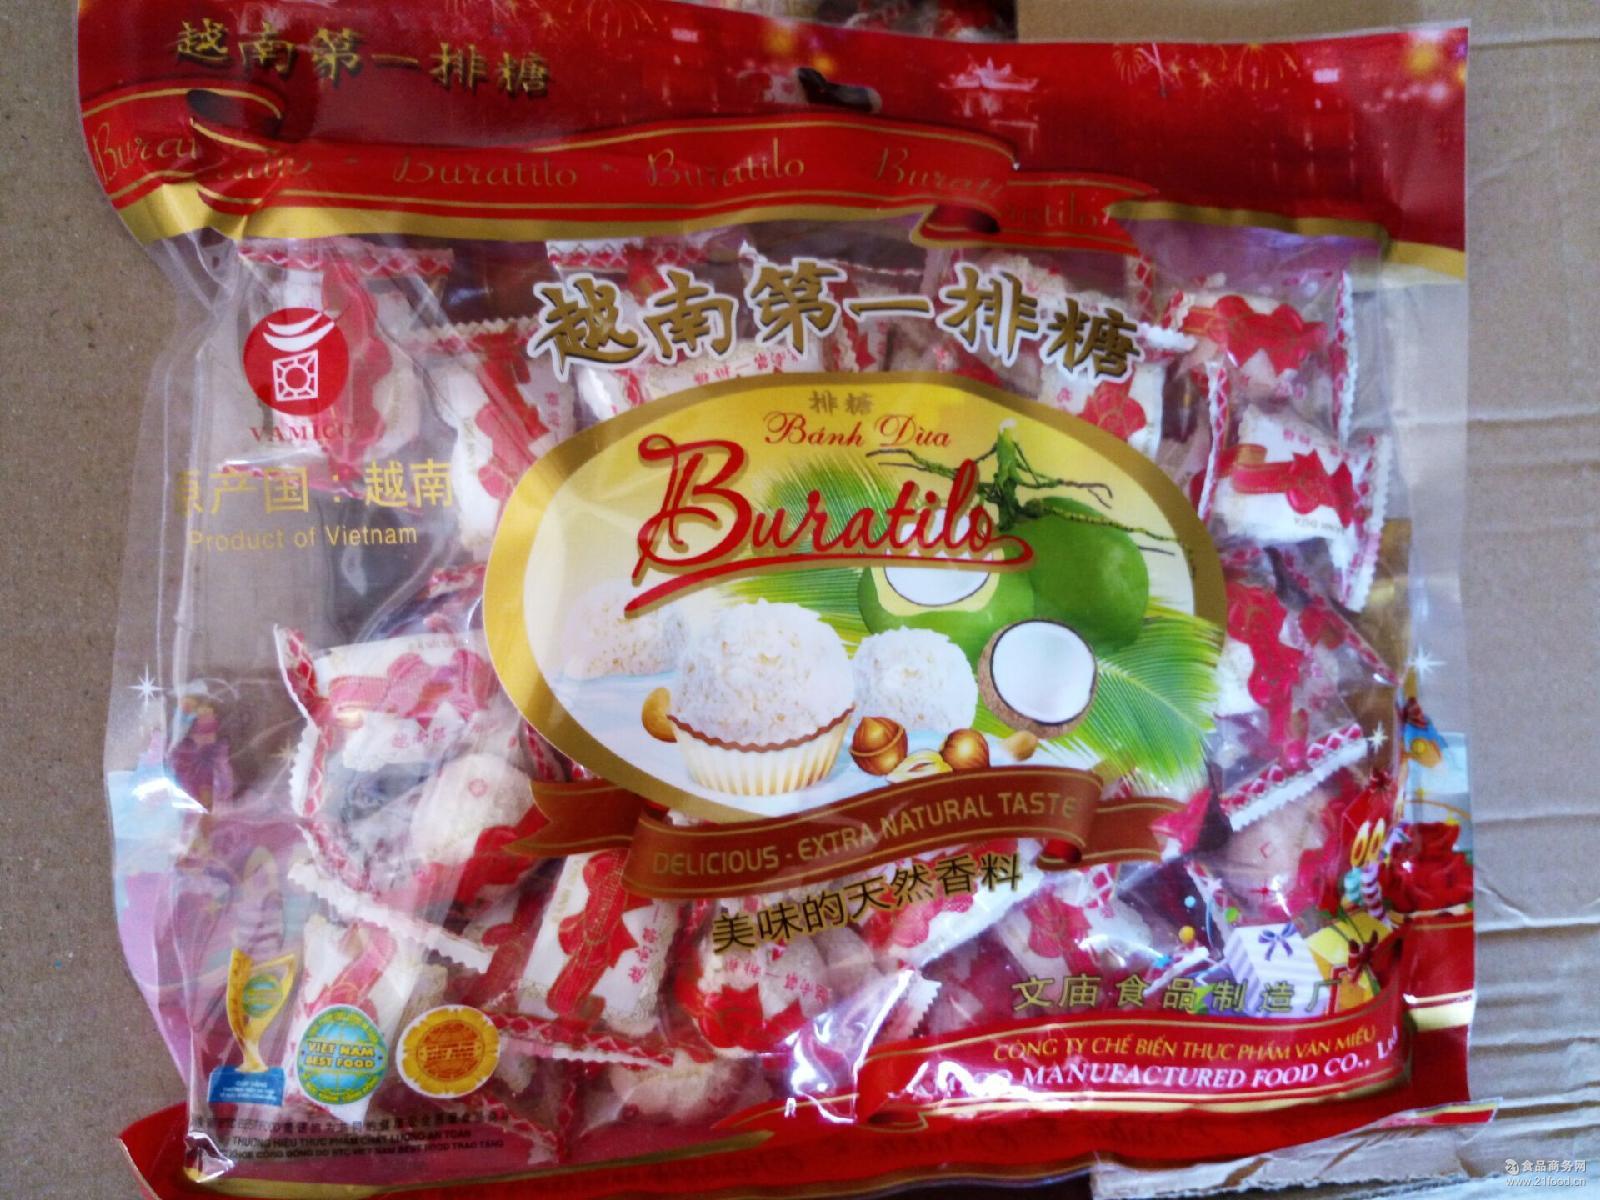 越南*排糖 文庙排糖 批发 香脆牛奶夹心花生 $205.00